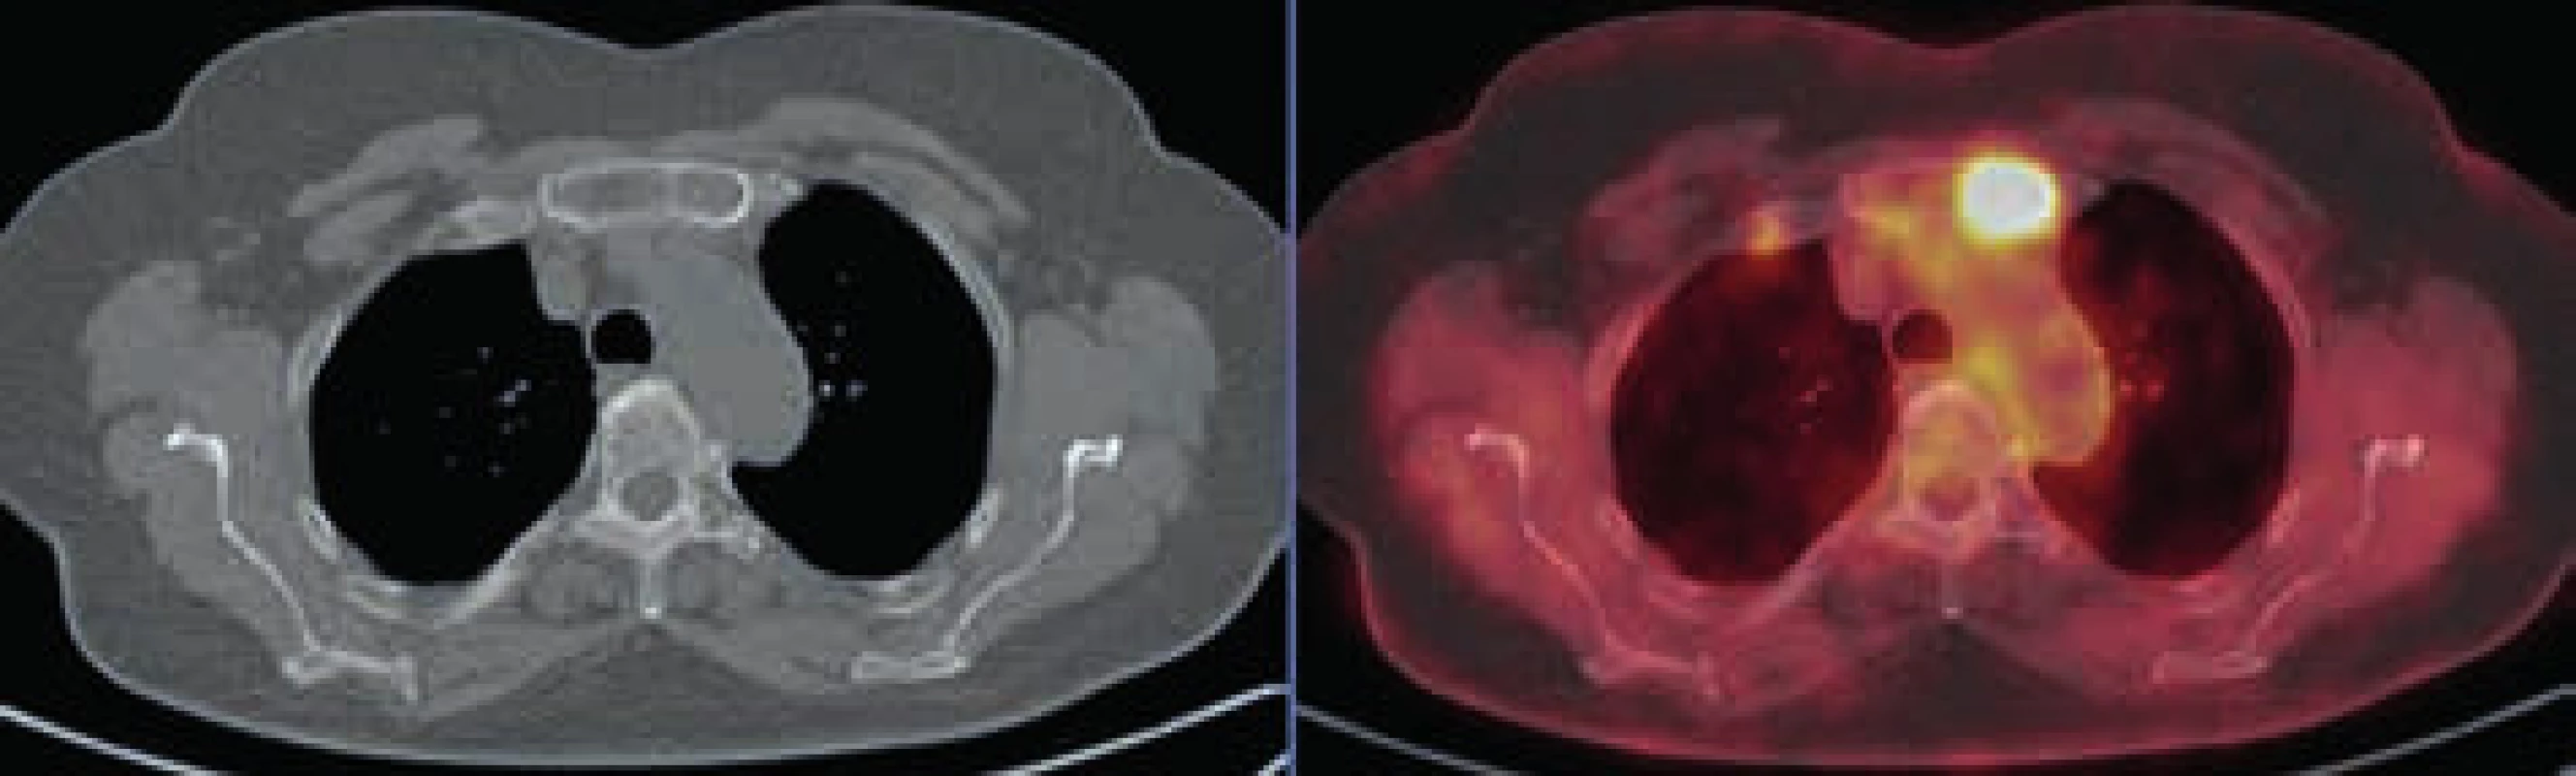 Osteolytické ložisko v levé polovině sterna vykazuje pozitivitu v PET obrazu